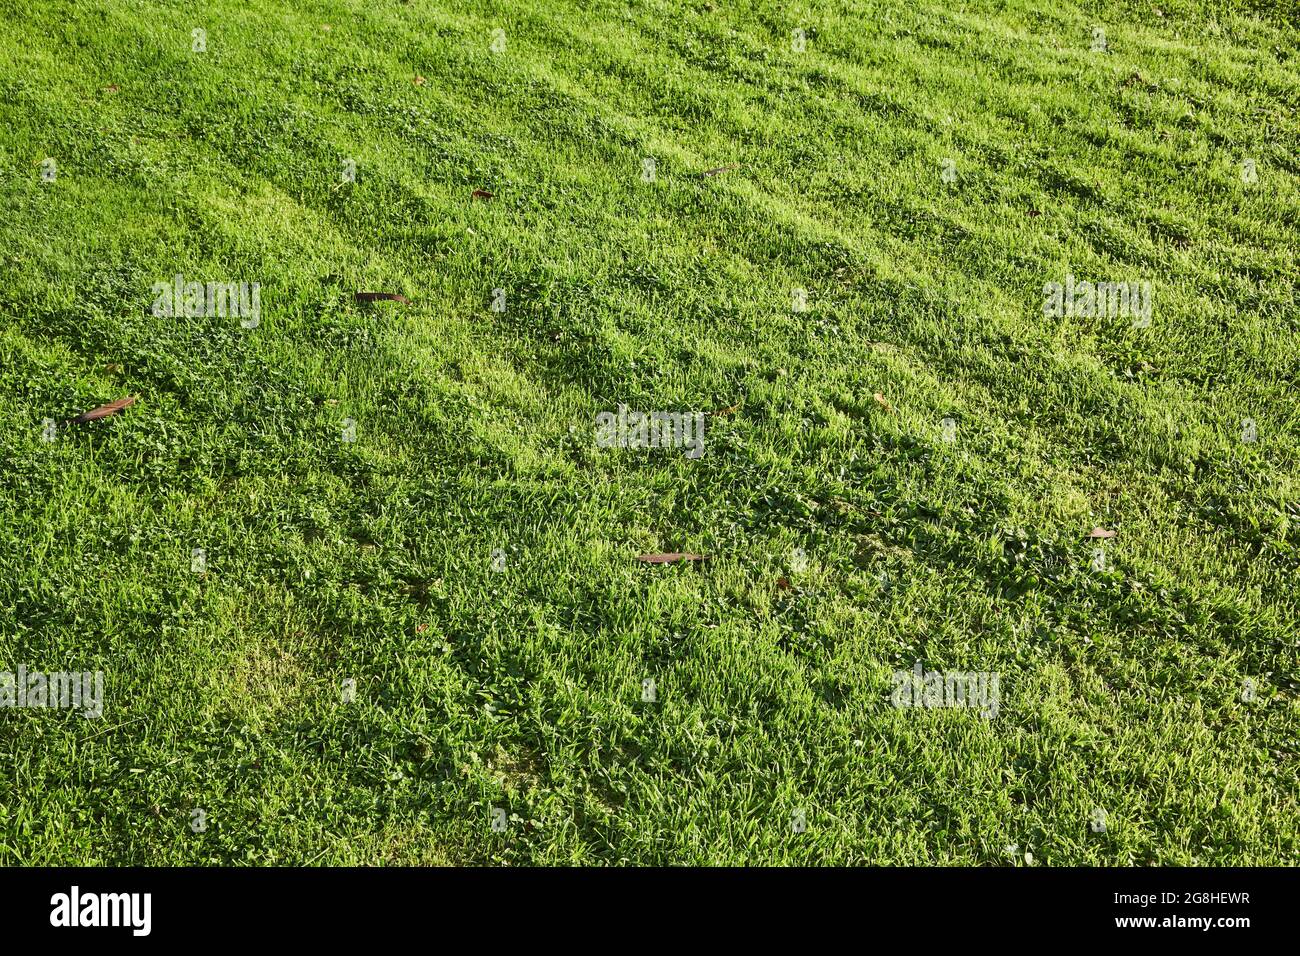 Green Grass cut short lawn Stock Photo